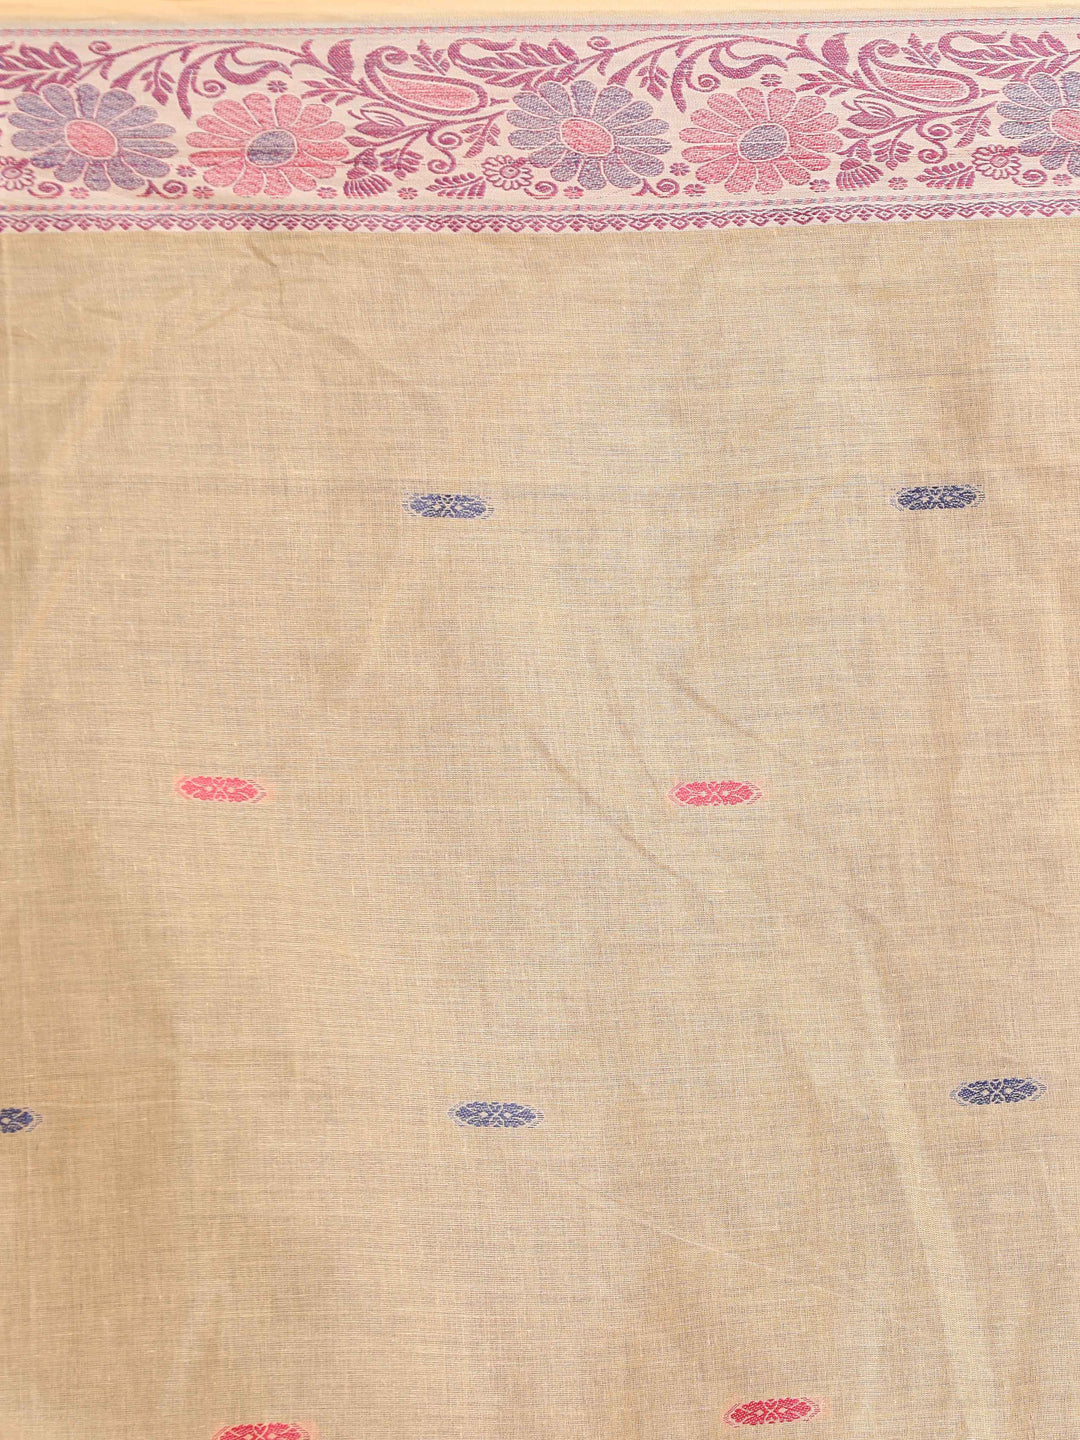 Indethnic Beige Woven Design Saree - Saree Detail View